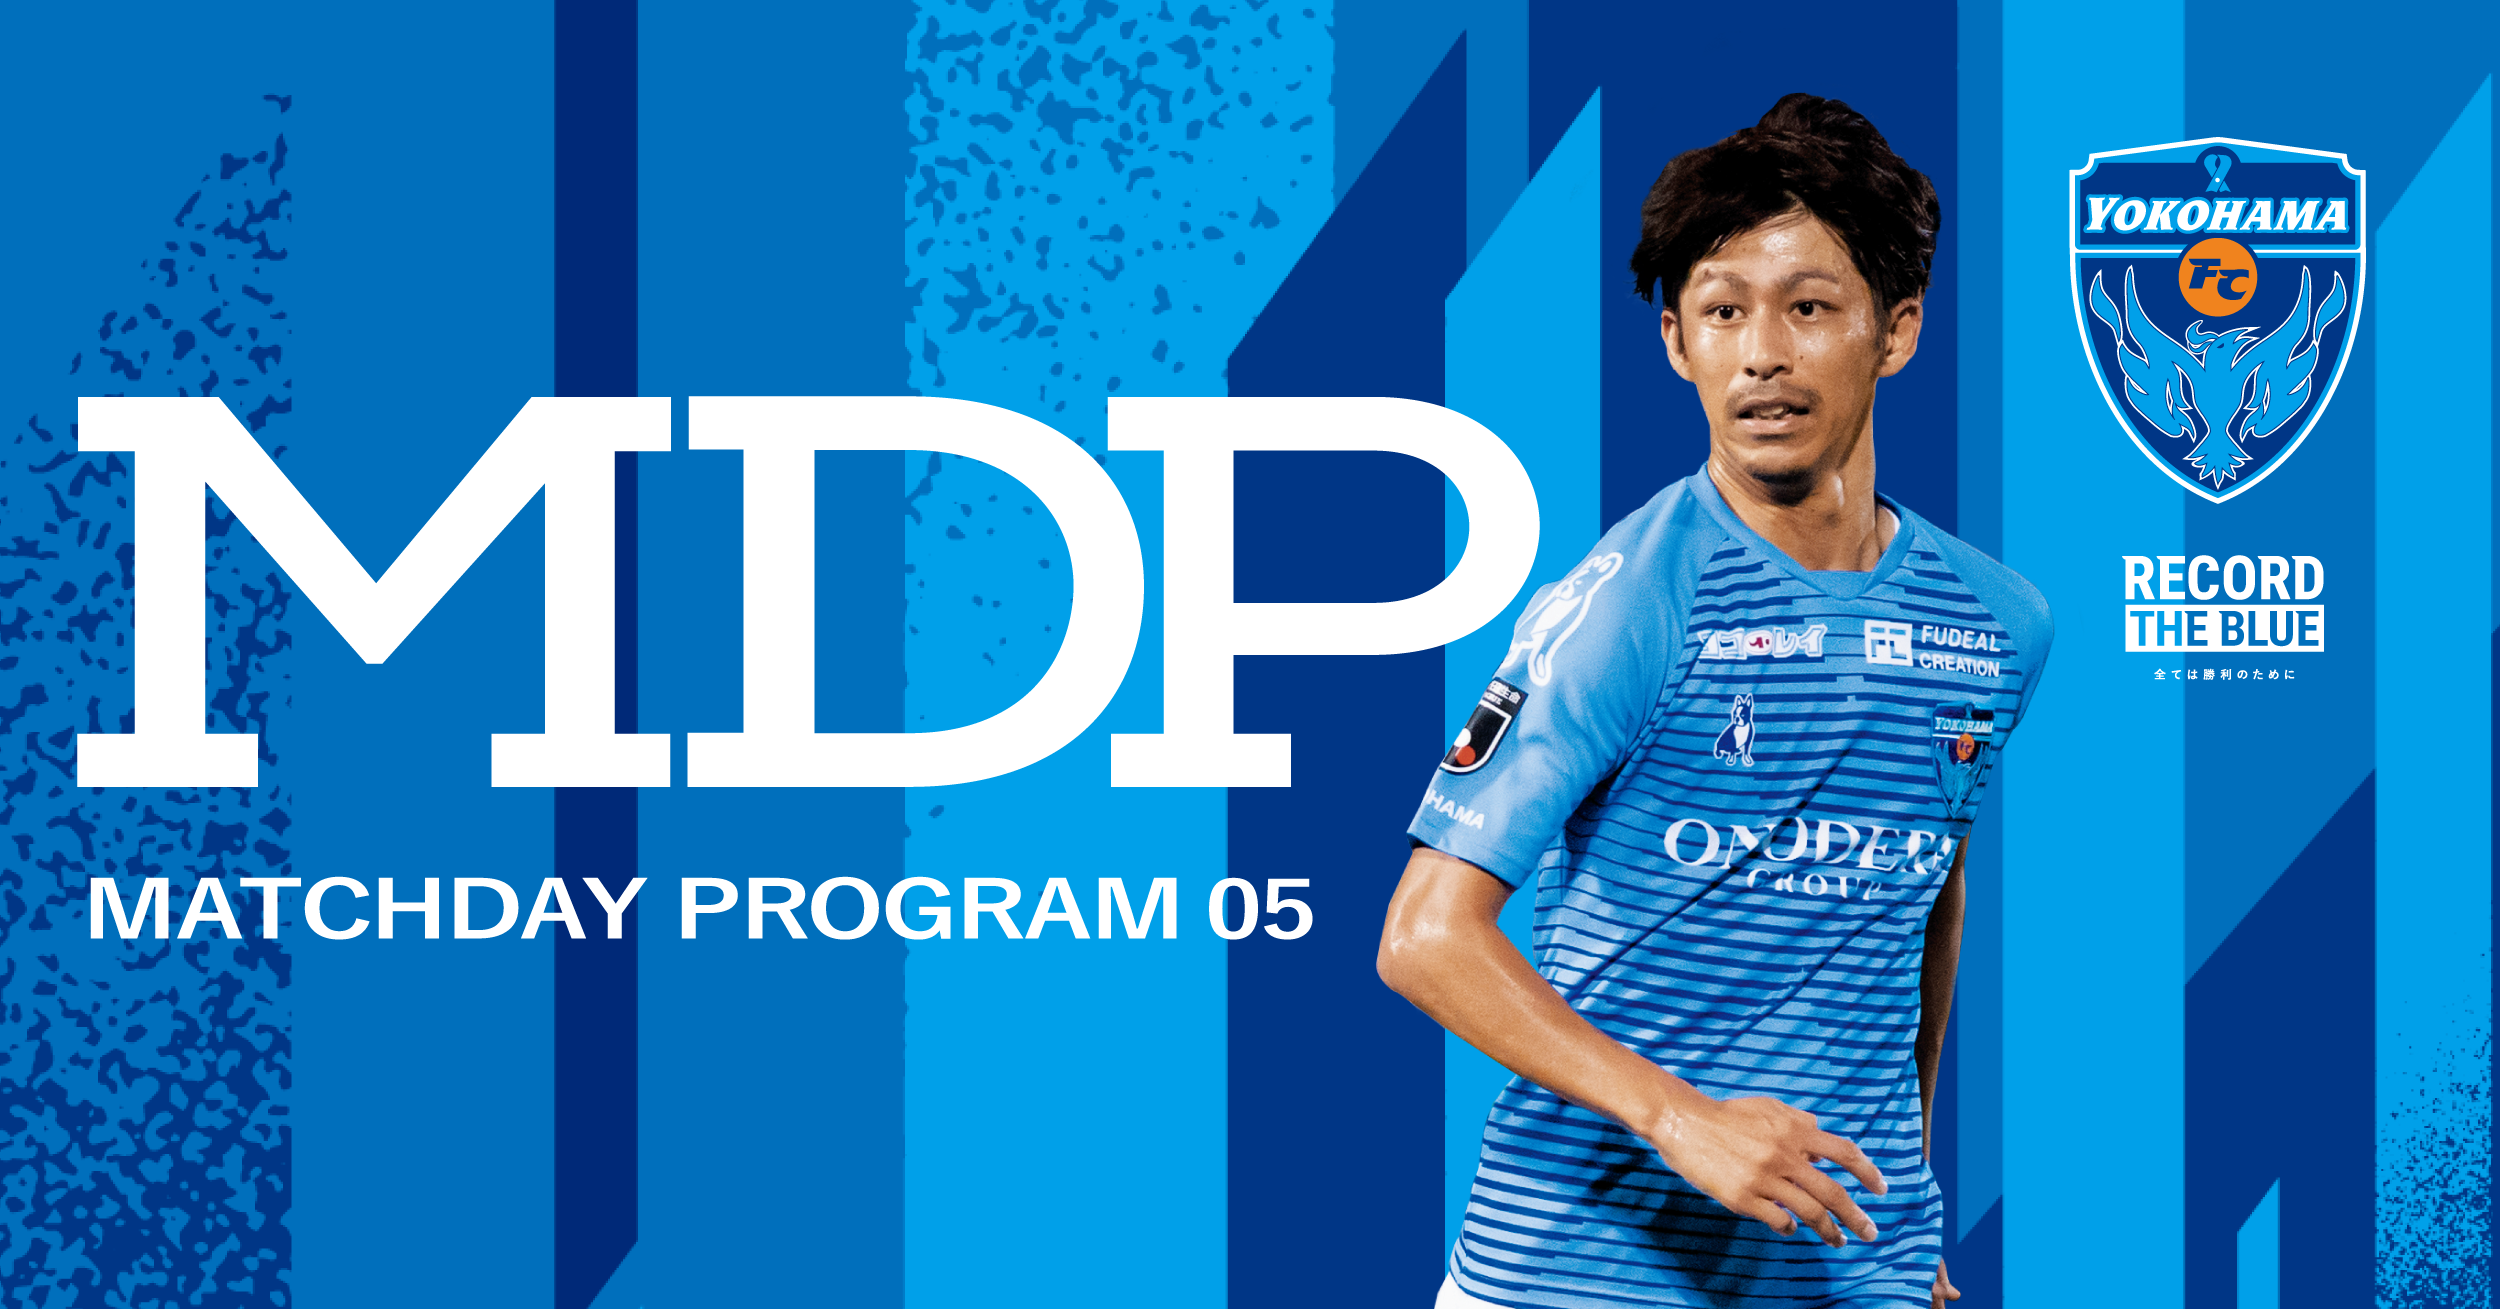 ７月26日 日 Vs浦和レッズ マッチデープログラム公開のお知らせ 横浜fcオフィシャルウェブサイト